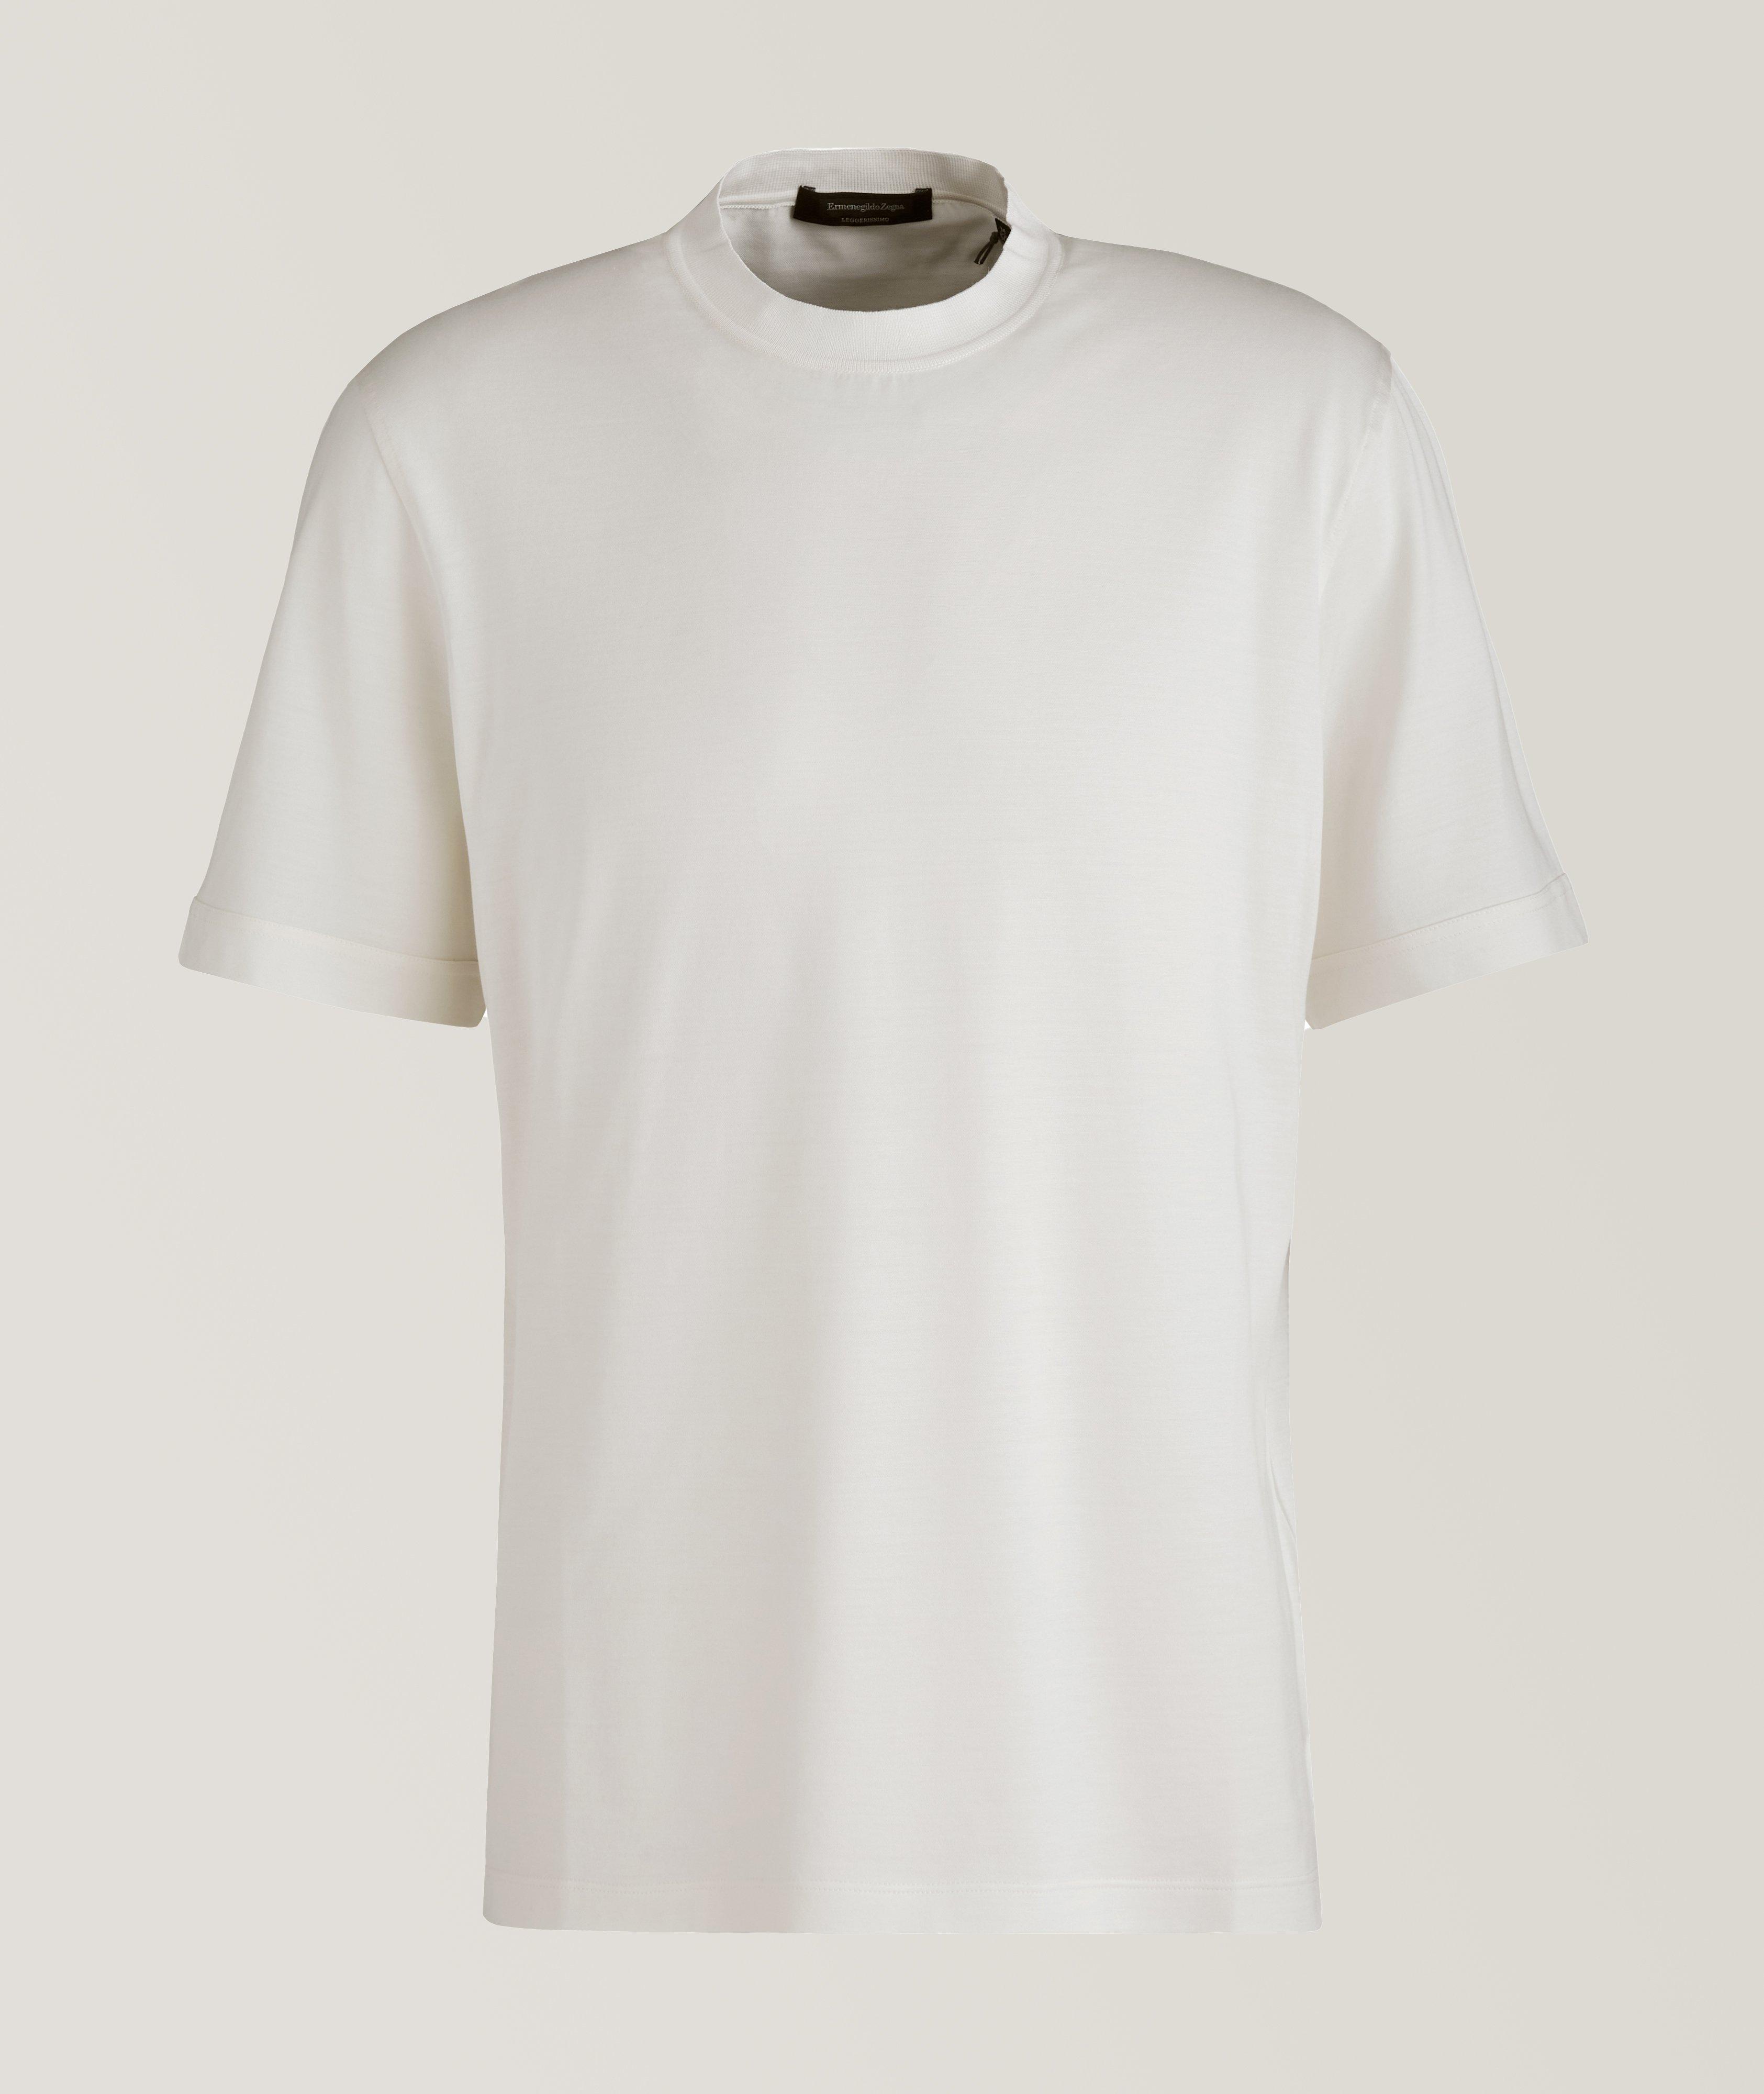 T-shirt en soie et coton, collection Leggerissimo image 0